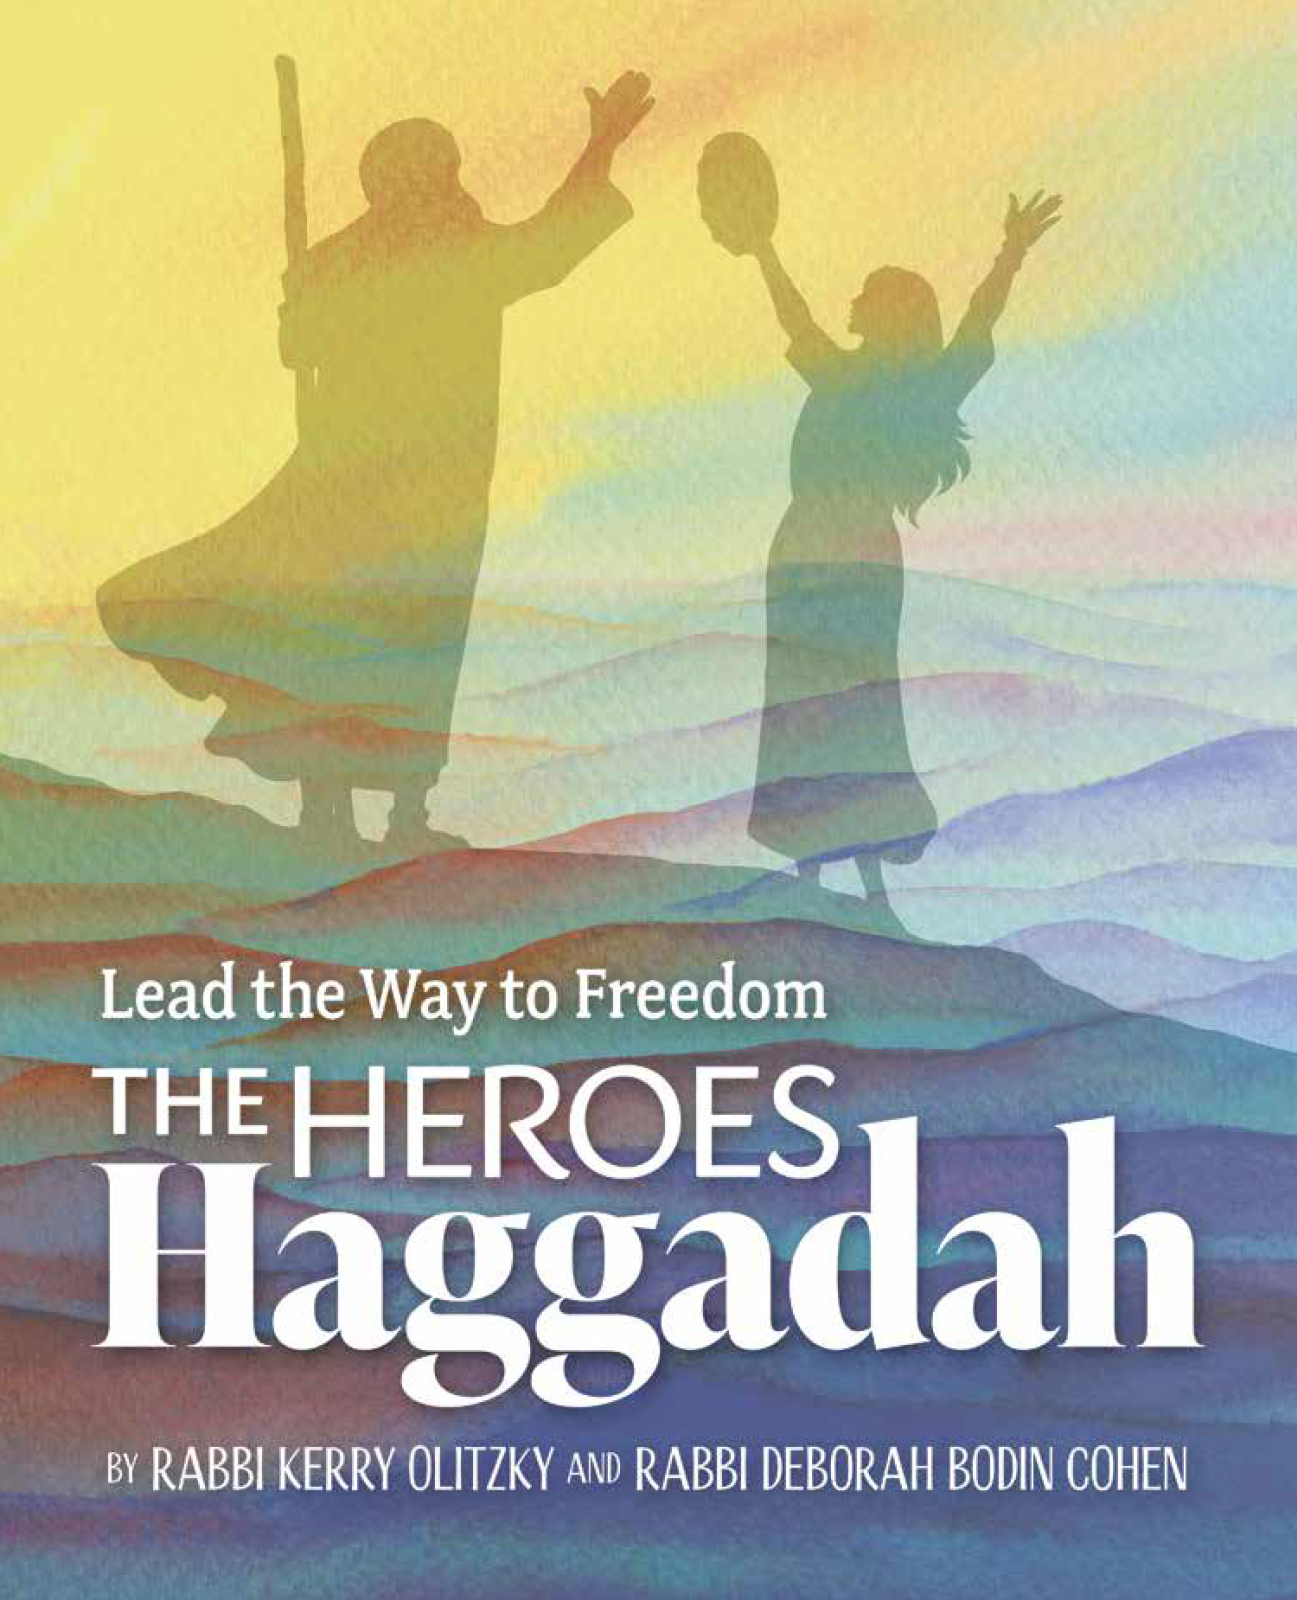 We Need Some Heroes: The Heroes Haggadah